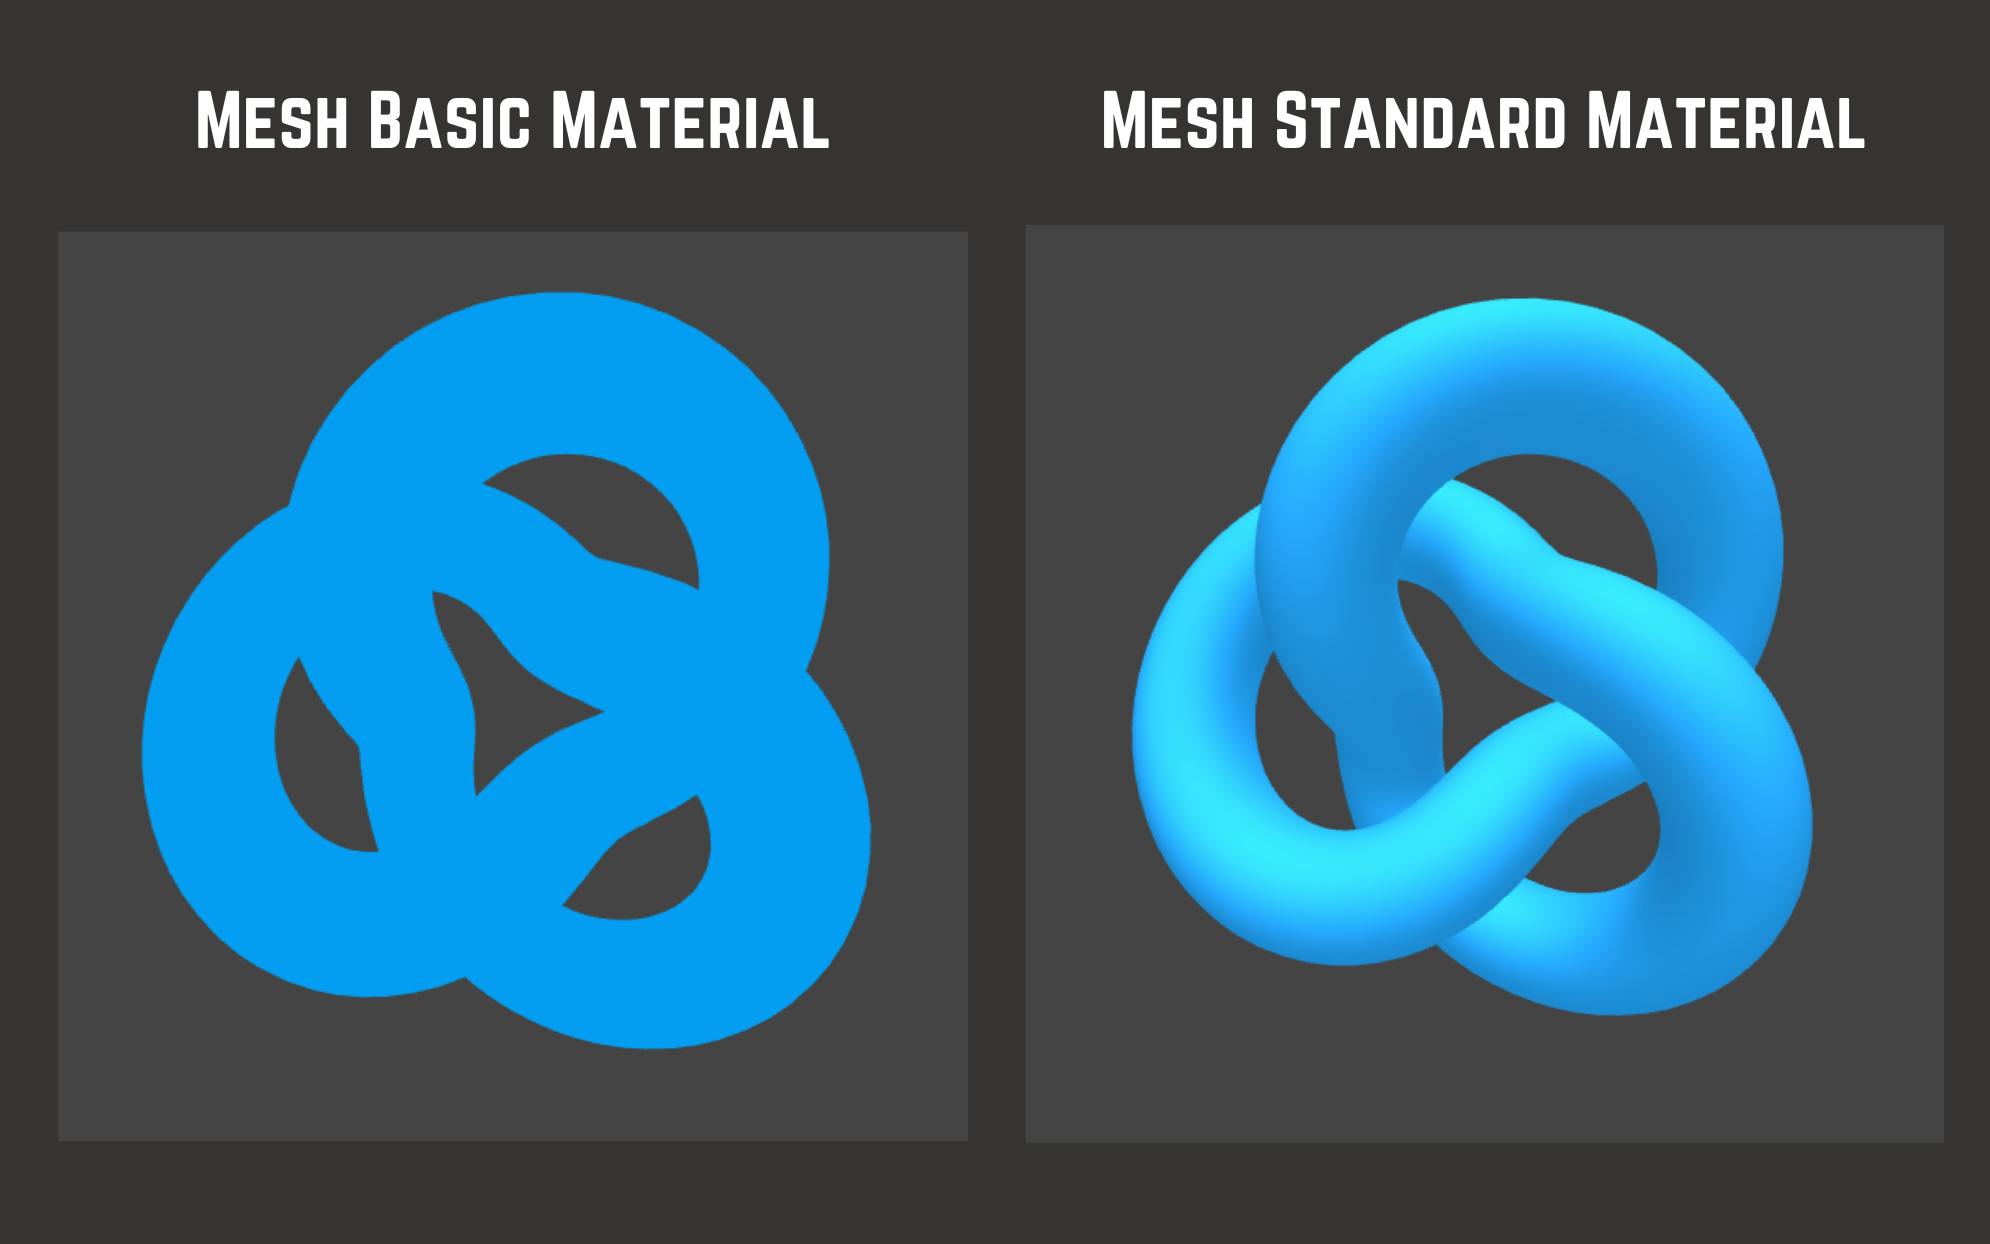 Torus geometry in mesh basic material vs mesh standard material